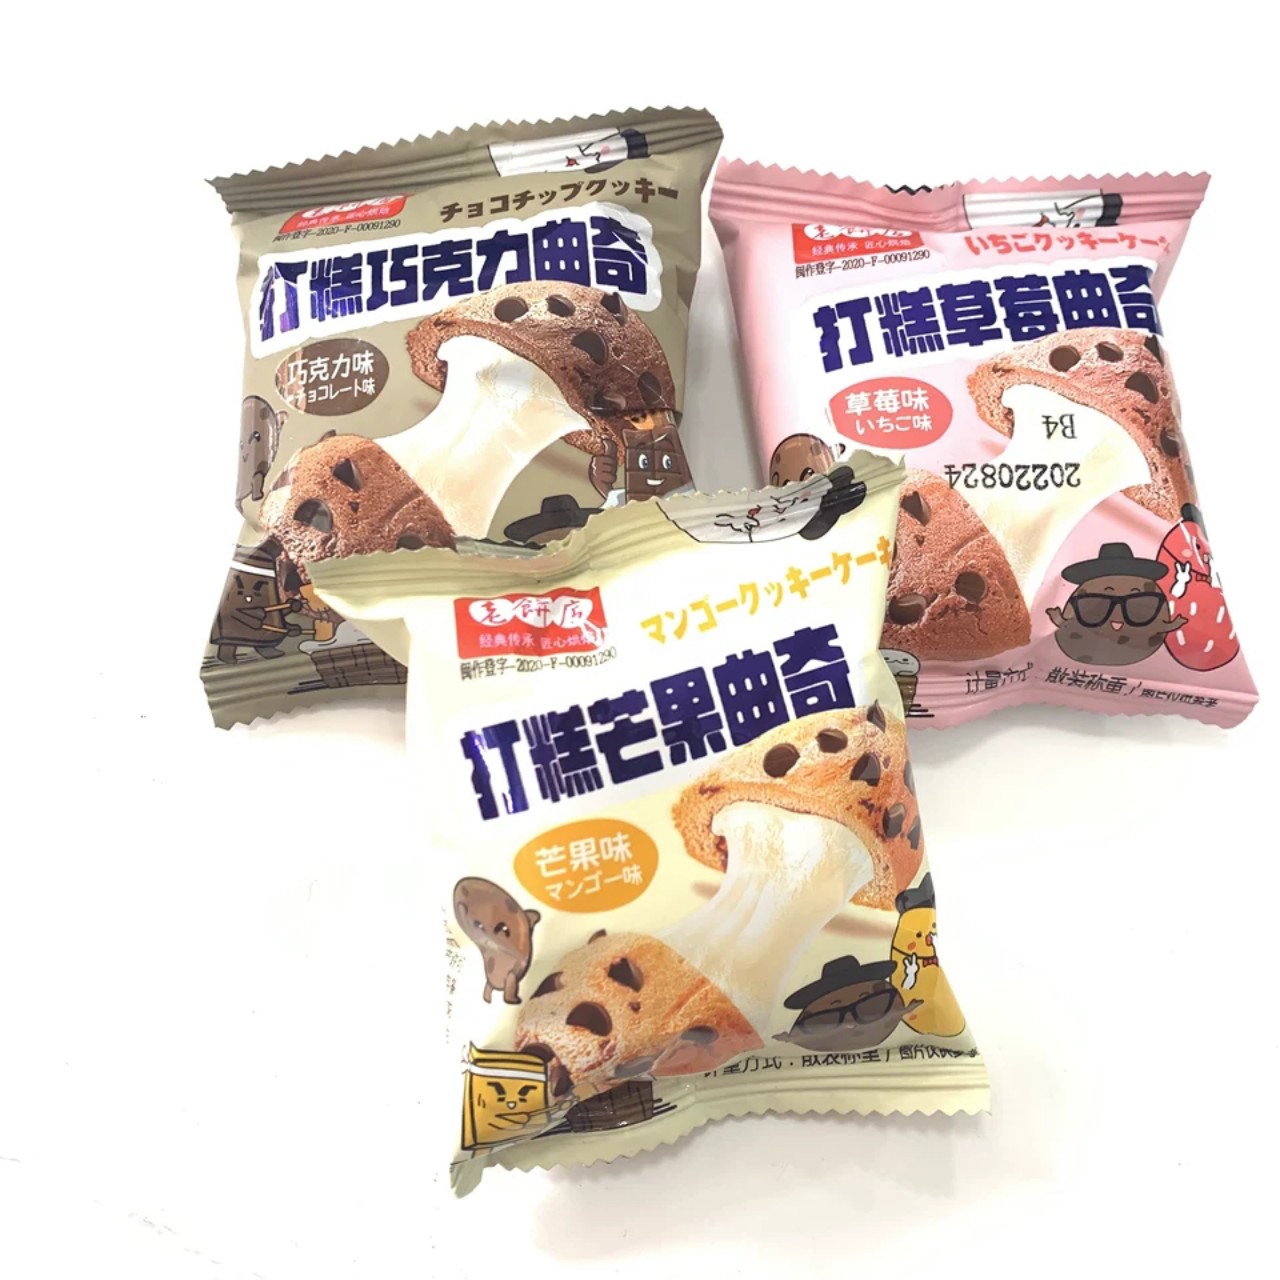 [ Hàng mới ] 100g Bánh quy Mochi socola / Bánh socola nhân sữa chua dẻo món ăn vặt mềm ngon đã nghiền